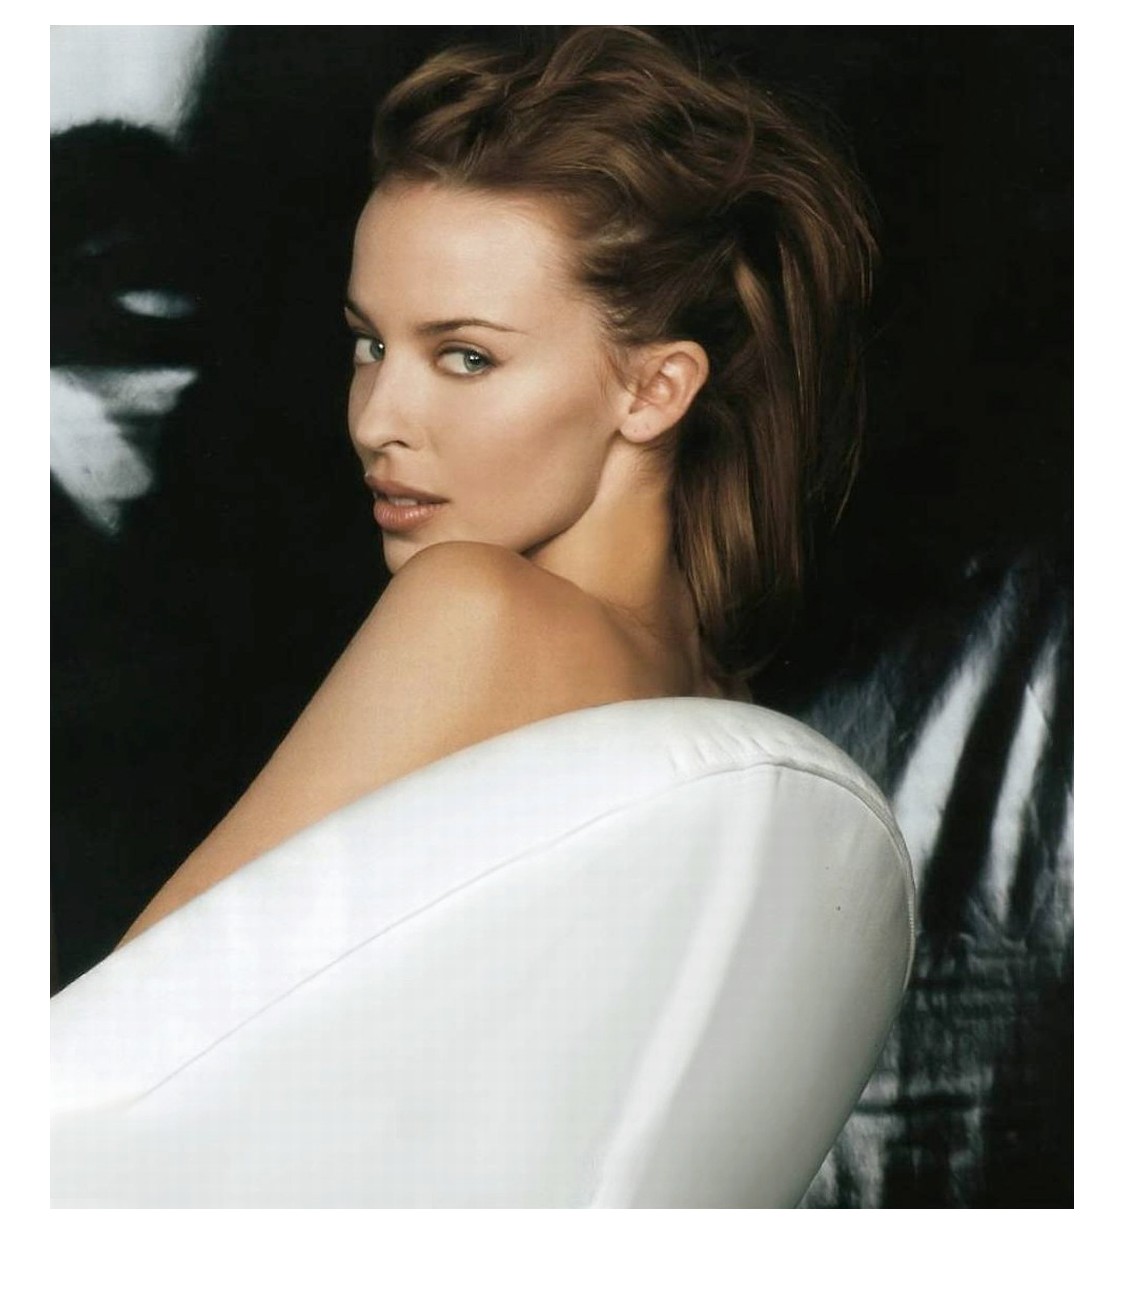 http://2.bp.blogspot.com/_qkdu4uOwe4A/TTHzV0H1guI/AAAAAAAABmM/Nnk4RAiTC94/s1600/Kylie_Minogue.jpg